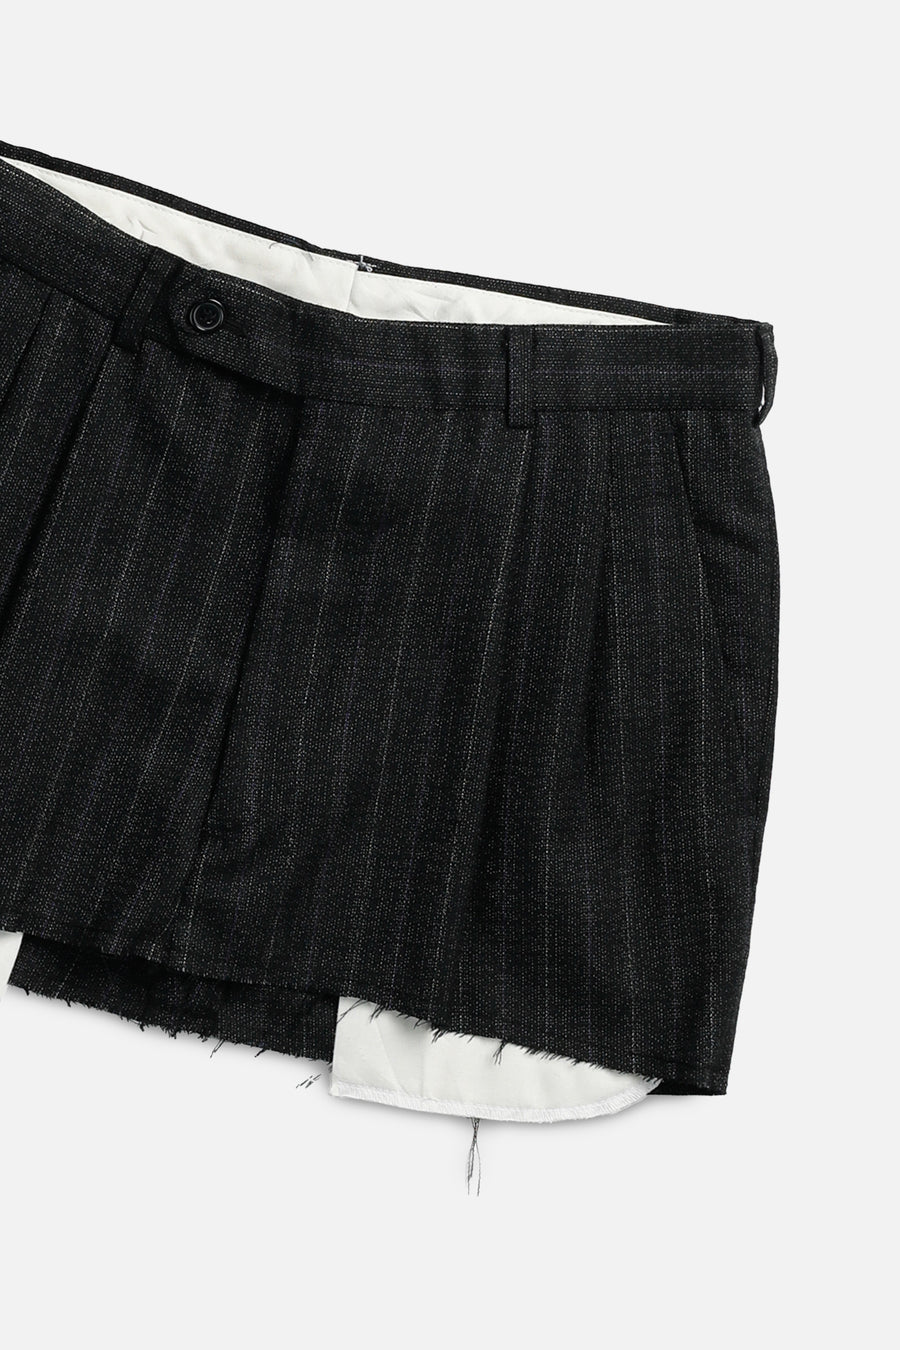 Rework Trouser Skirt - XS